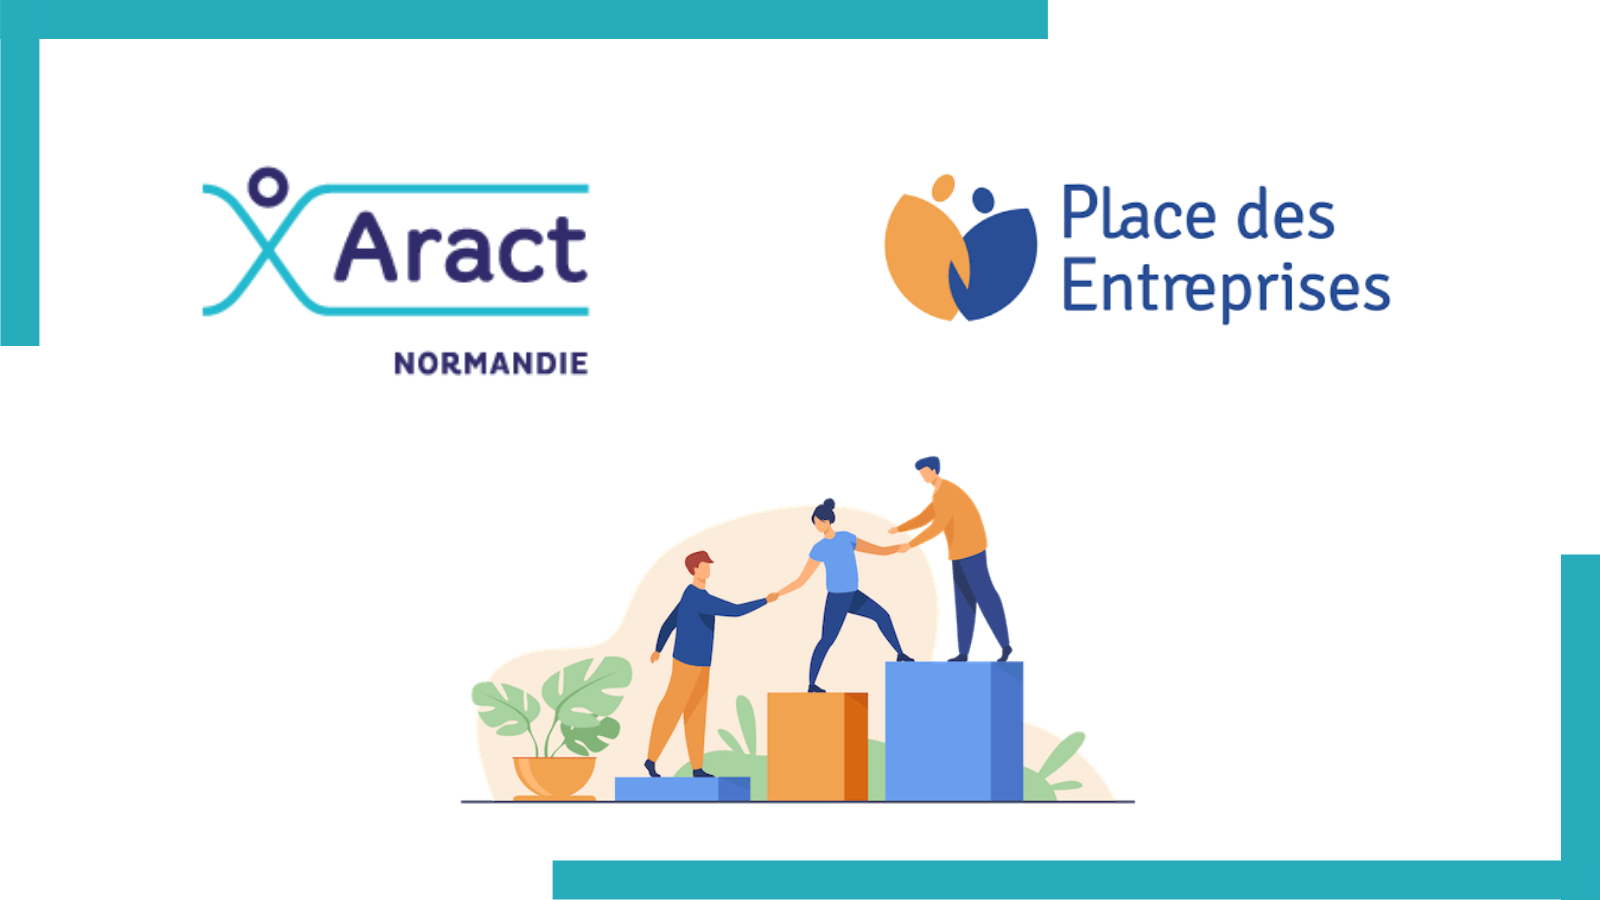 L Aract Normandie est partenaire de Place des Entreprises un nouveau service public pour les TPE PME